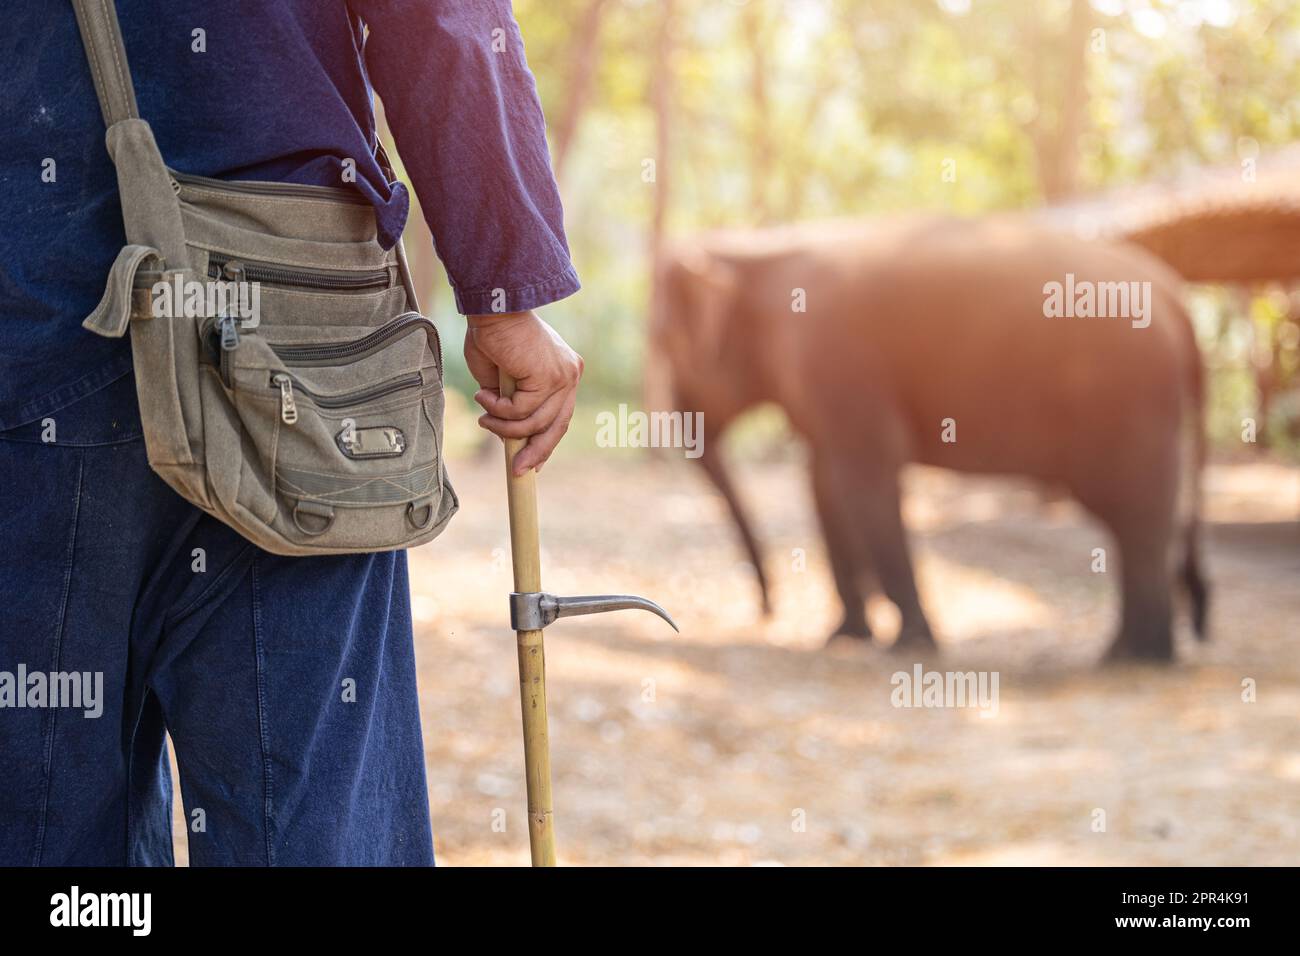 Entrenador de elefantes o Mahout con Bull Hook Ankus para orden de control elefante salvaje mantener protegido de cazador de elefantes para colmillos Foto de stock